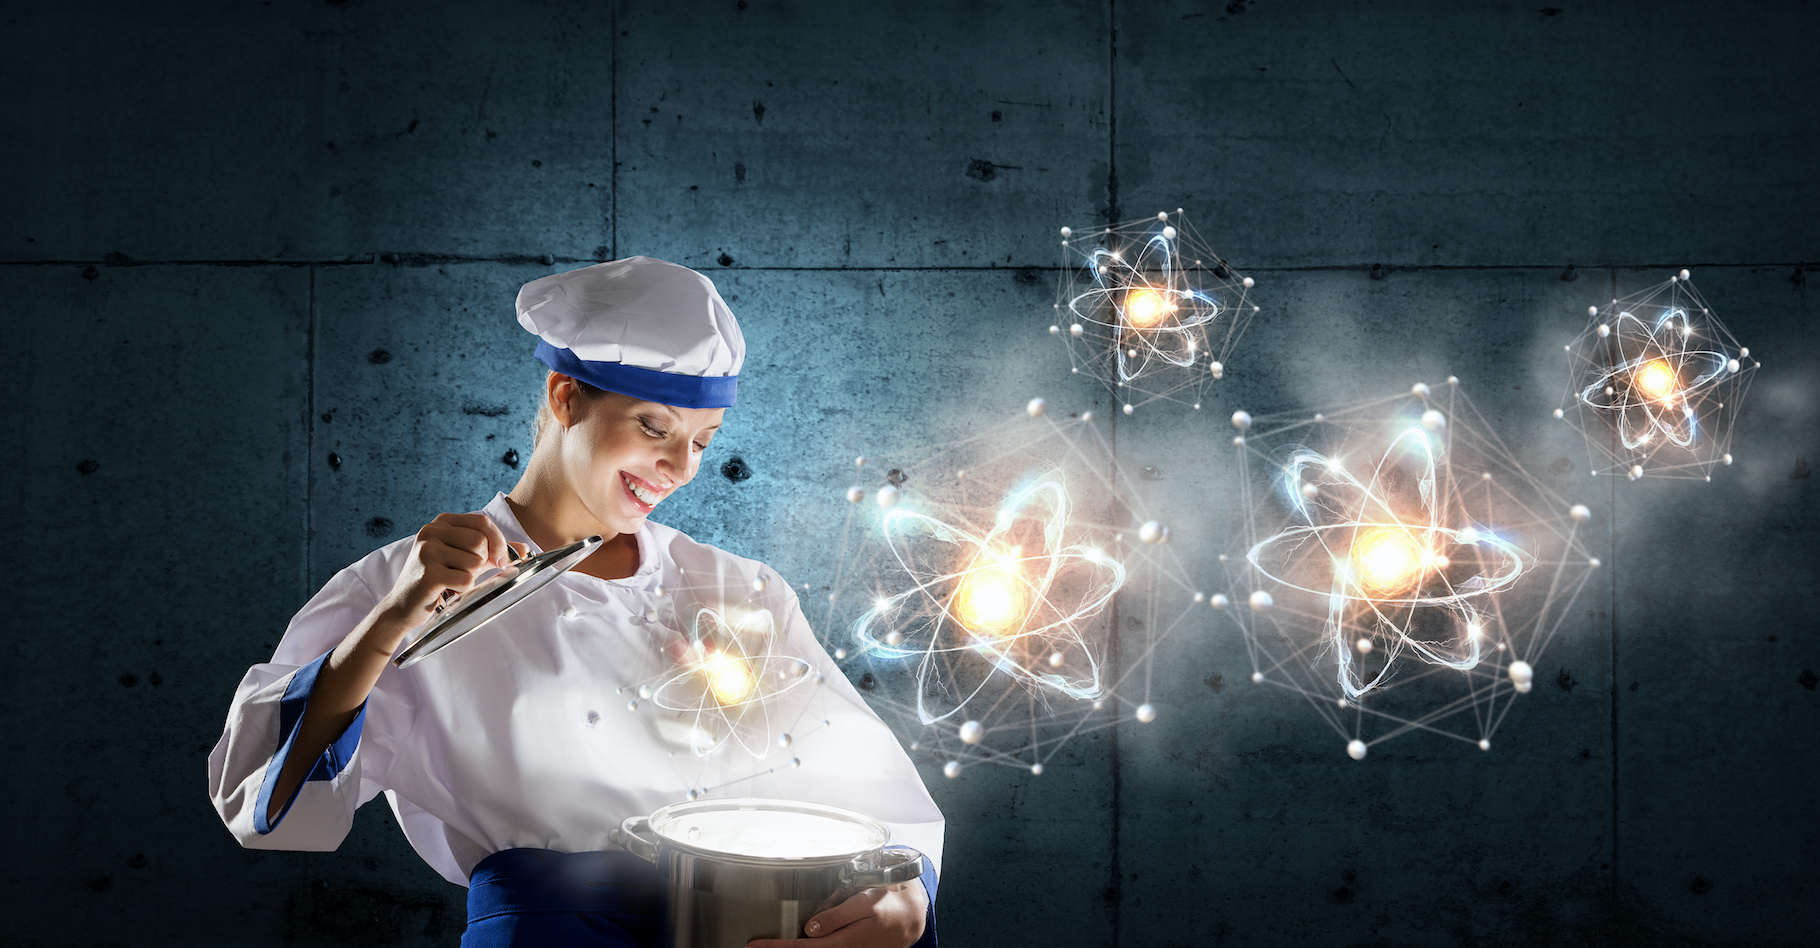 La cuisine moléculaire ou comment la science peut-elle se mettre au service de la cuisine pour créer les plaisirs culinaires de demain ? À découvrir dans l’exposition « Banquet ». © Sergey Nivens, Adobe Stock